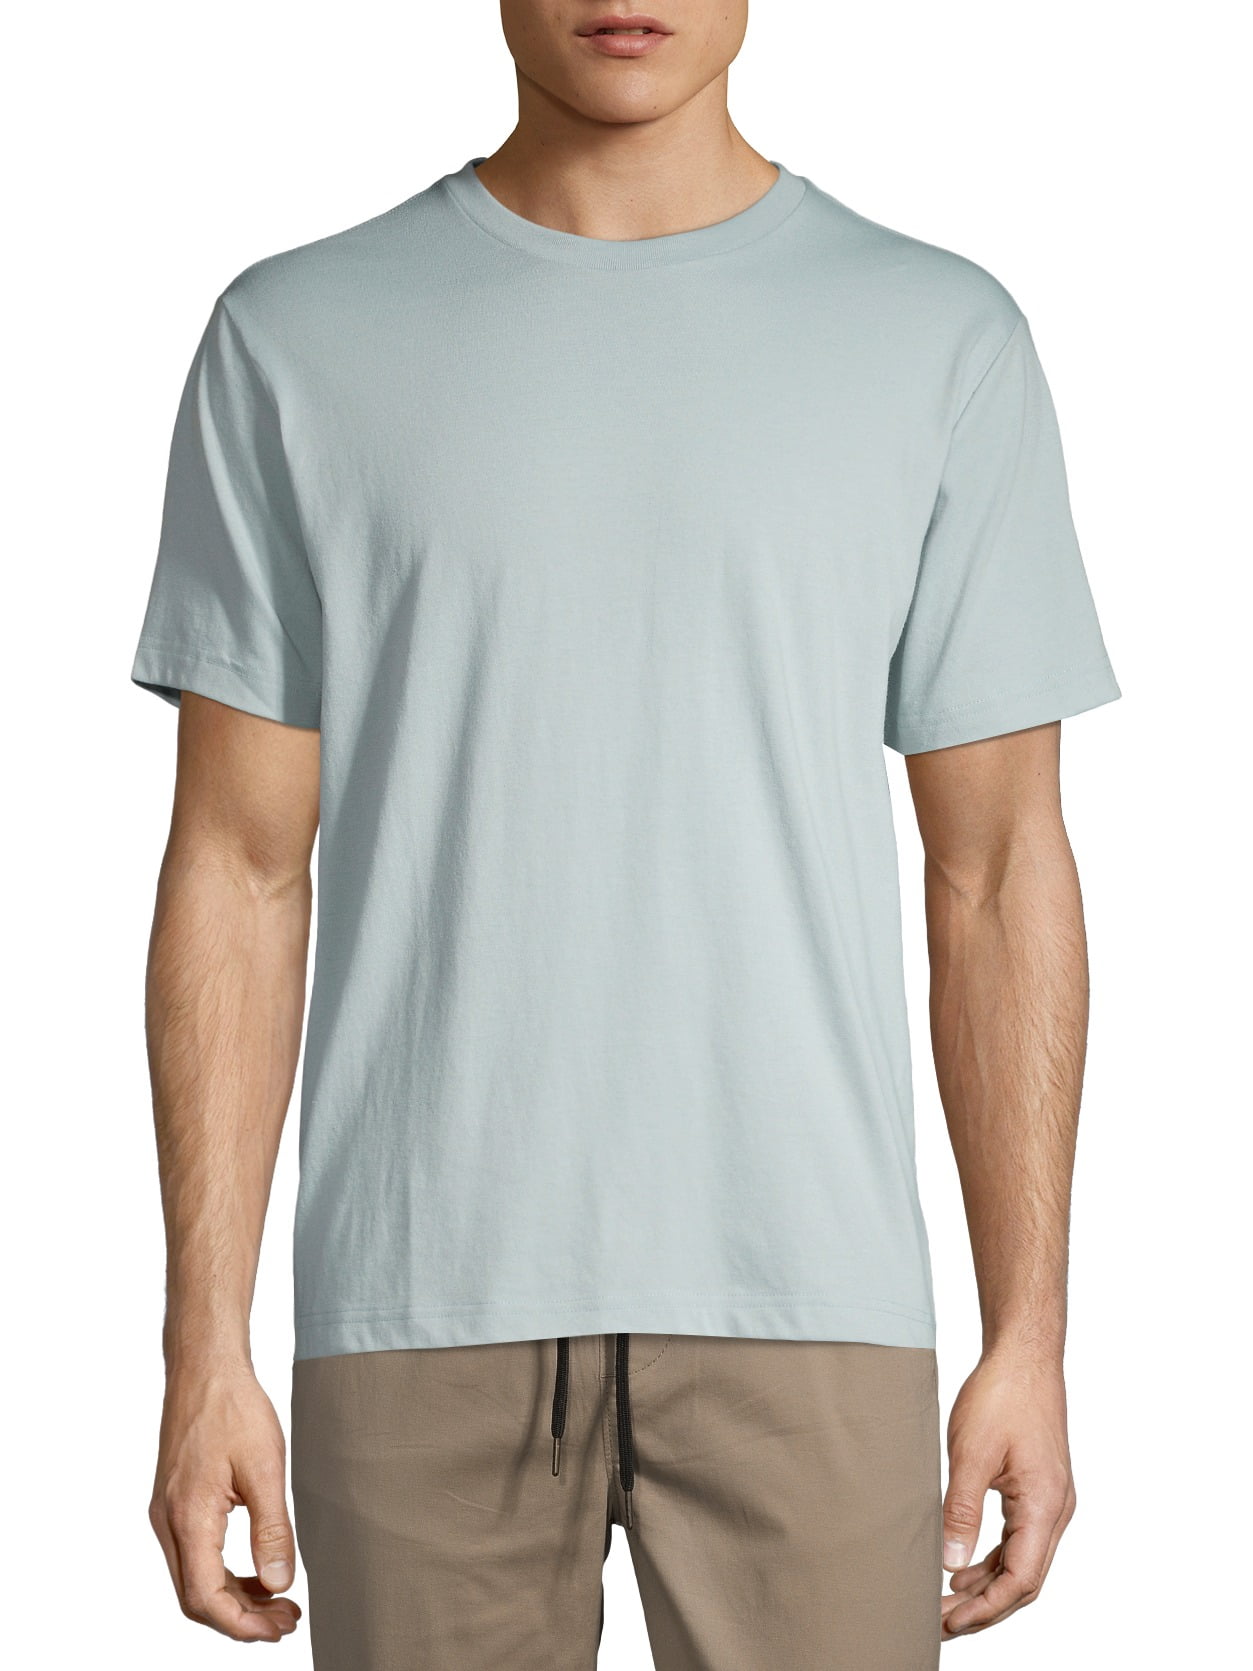 George Men's and Big Men's Short Sleeve Crewneck T-Shirt - Walmart.com